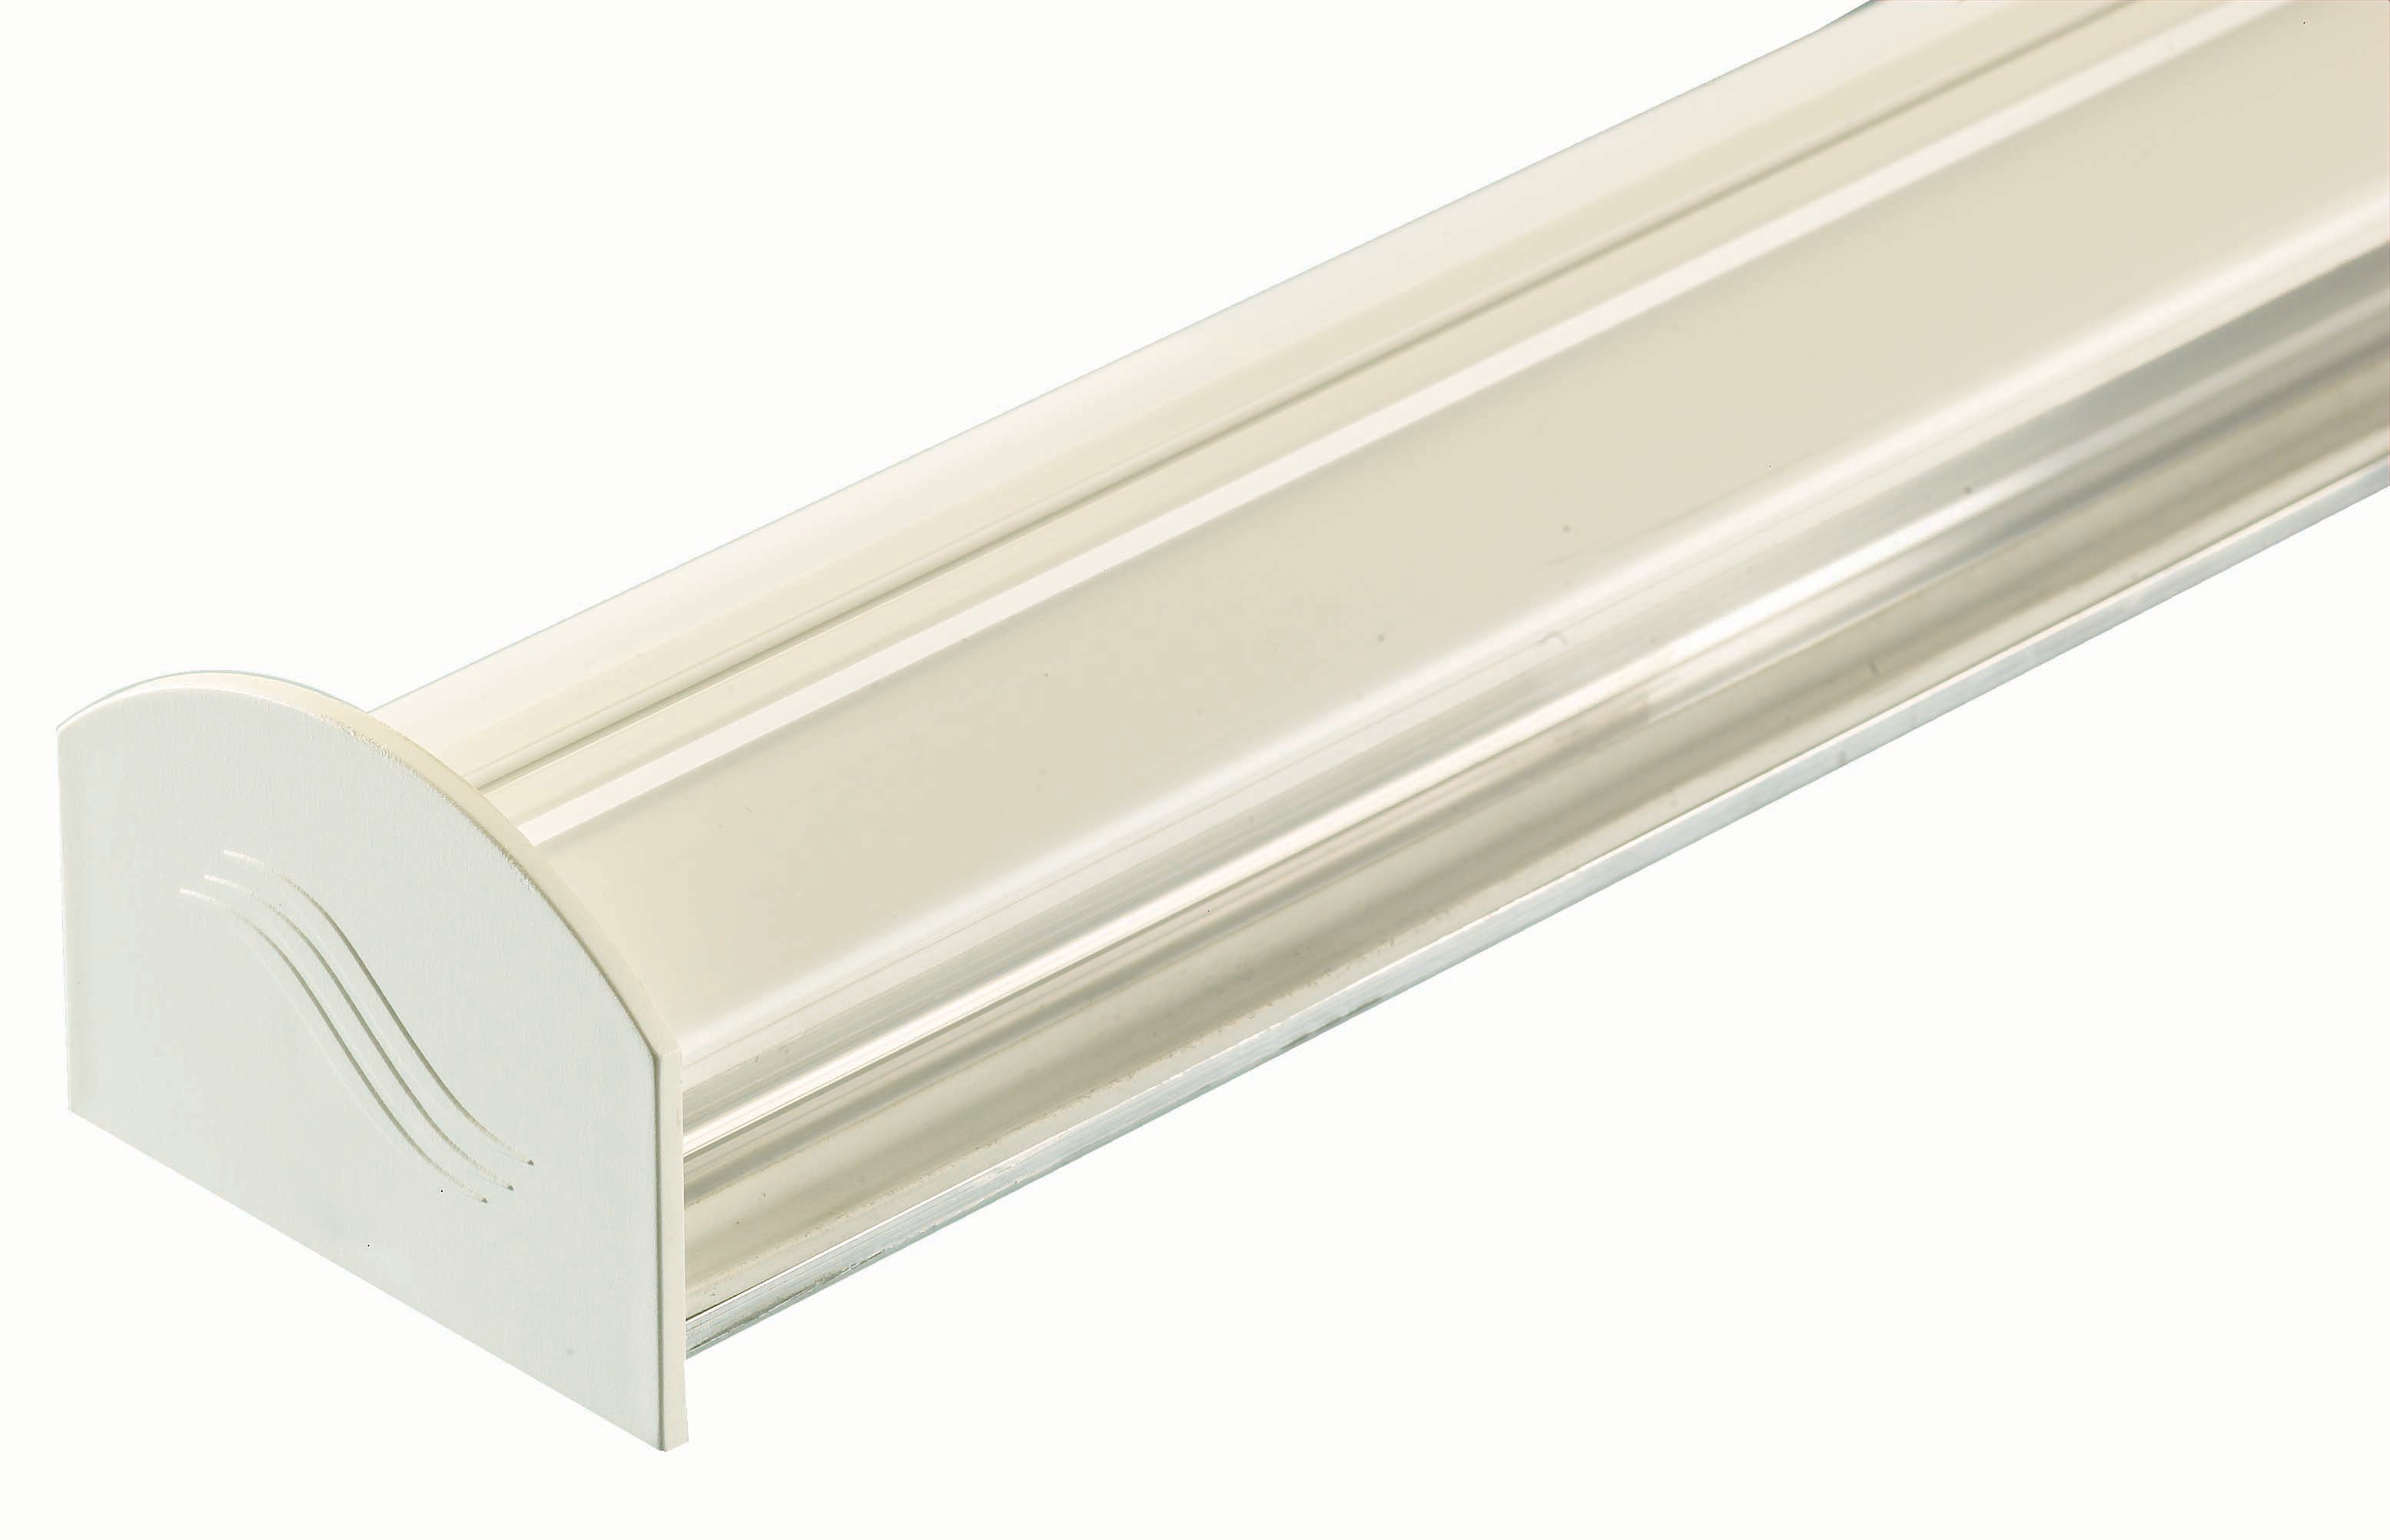 Image of Aluminium Glazing Bar Base and PVC Cap - White 4m